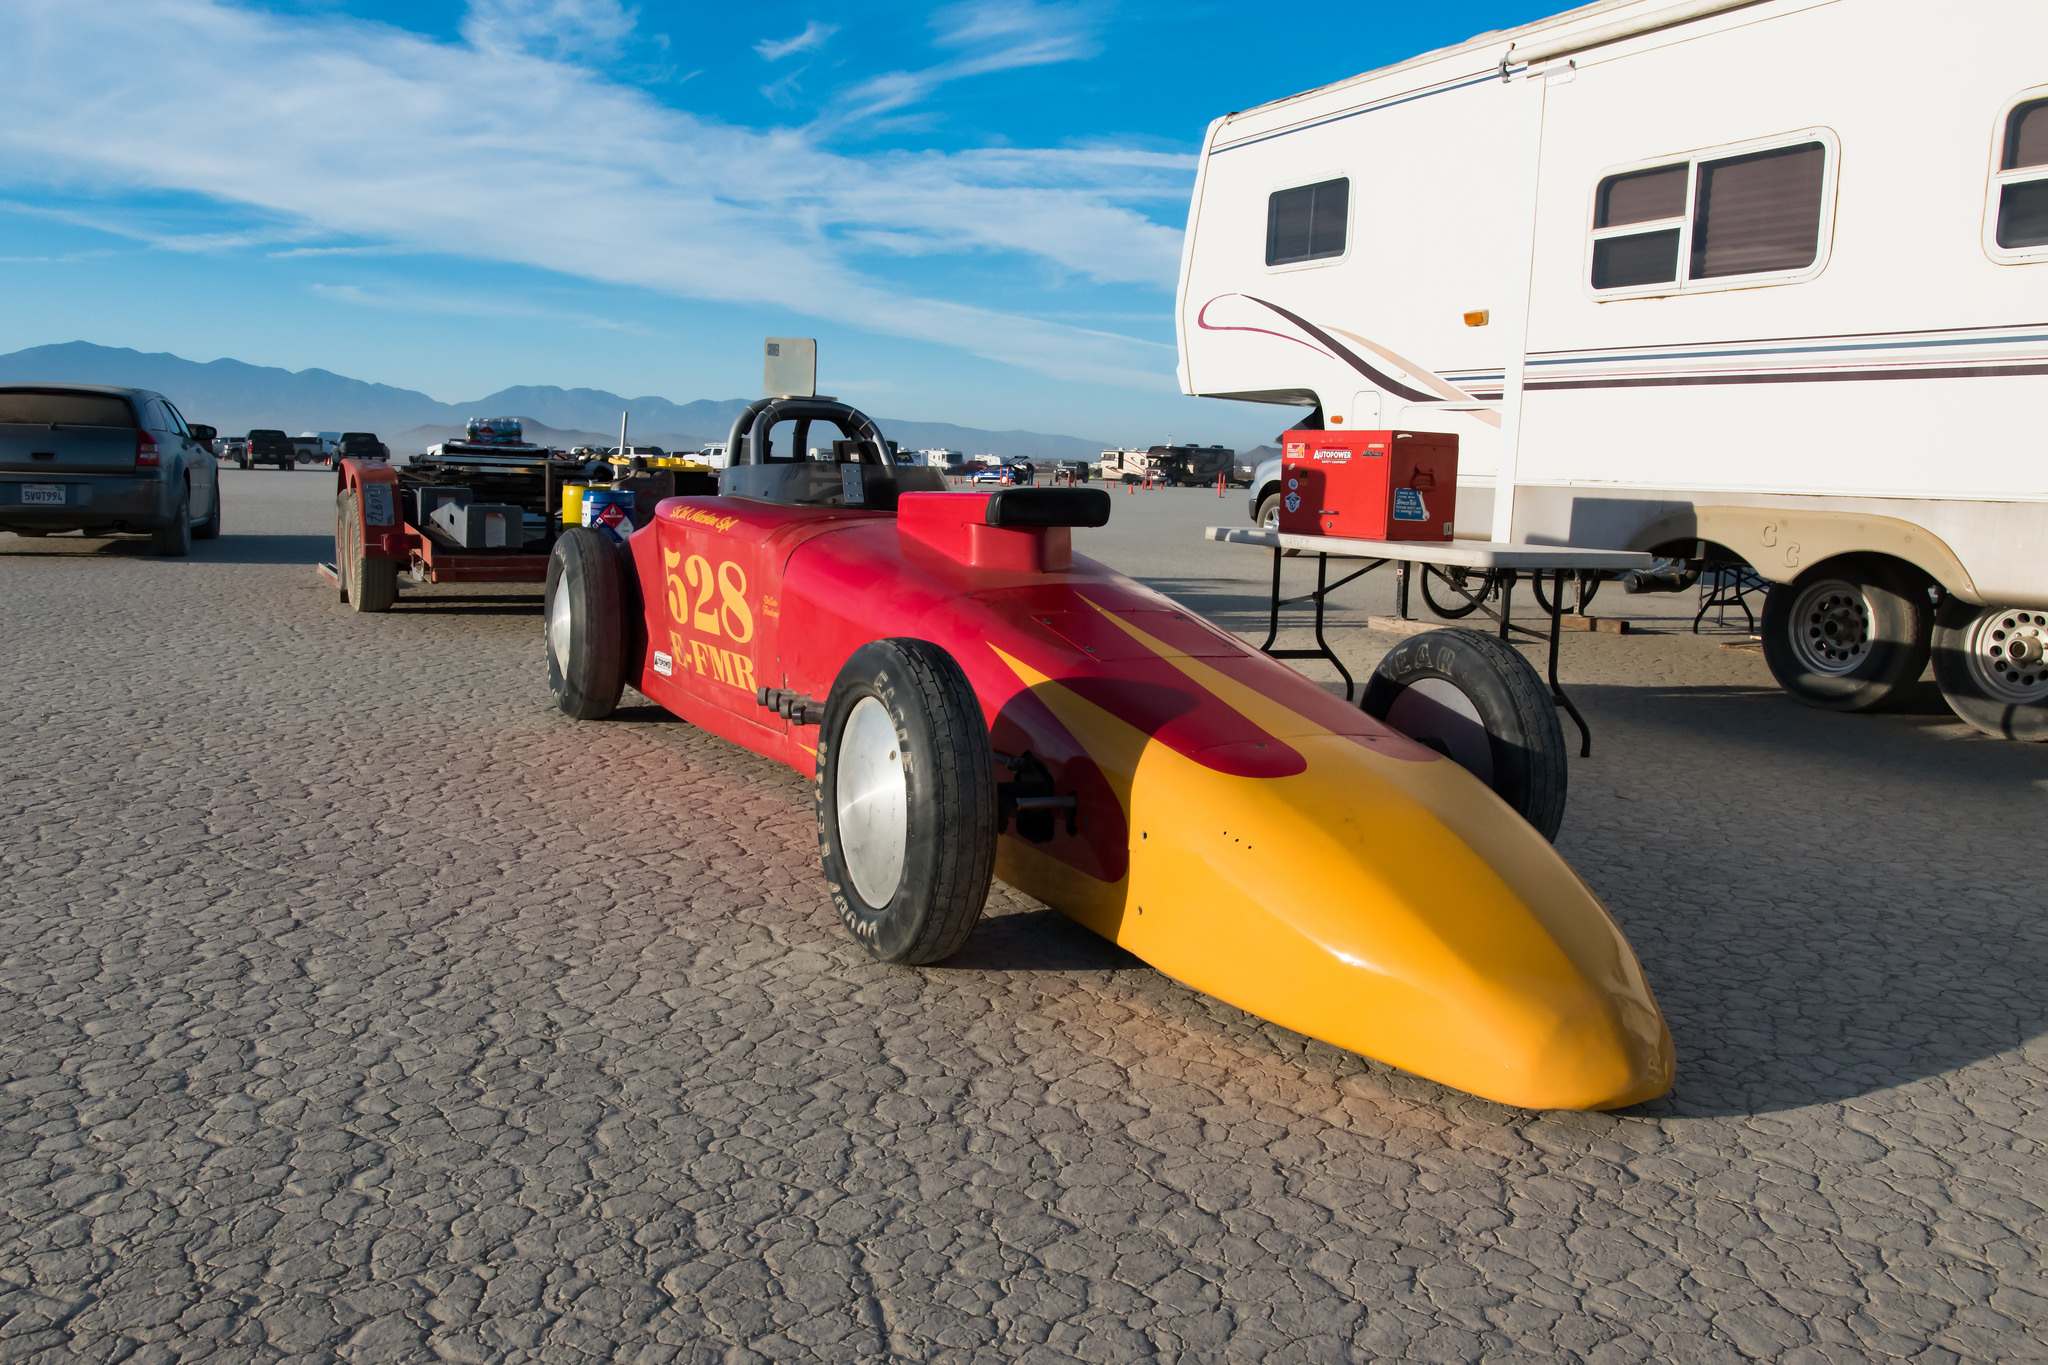 land speed racing8 Speed Racing at El Mirage Dry Lake